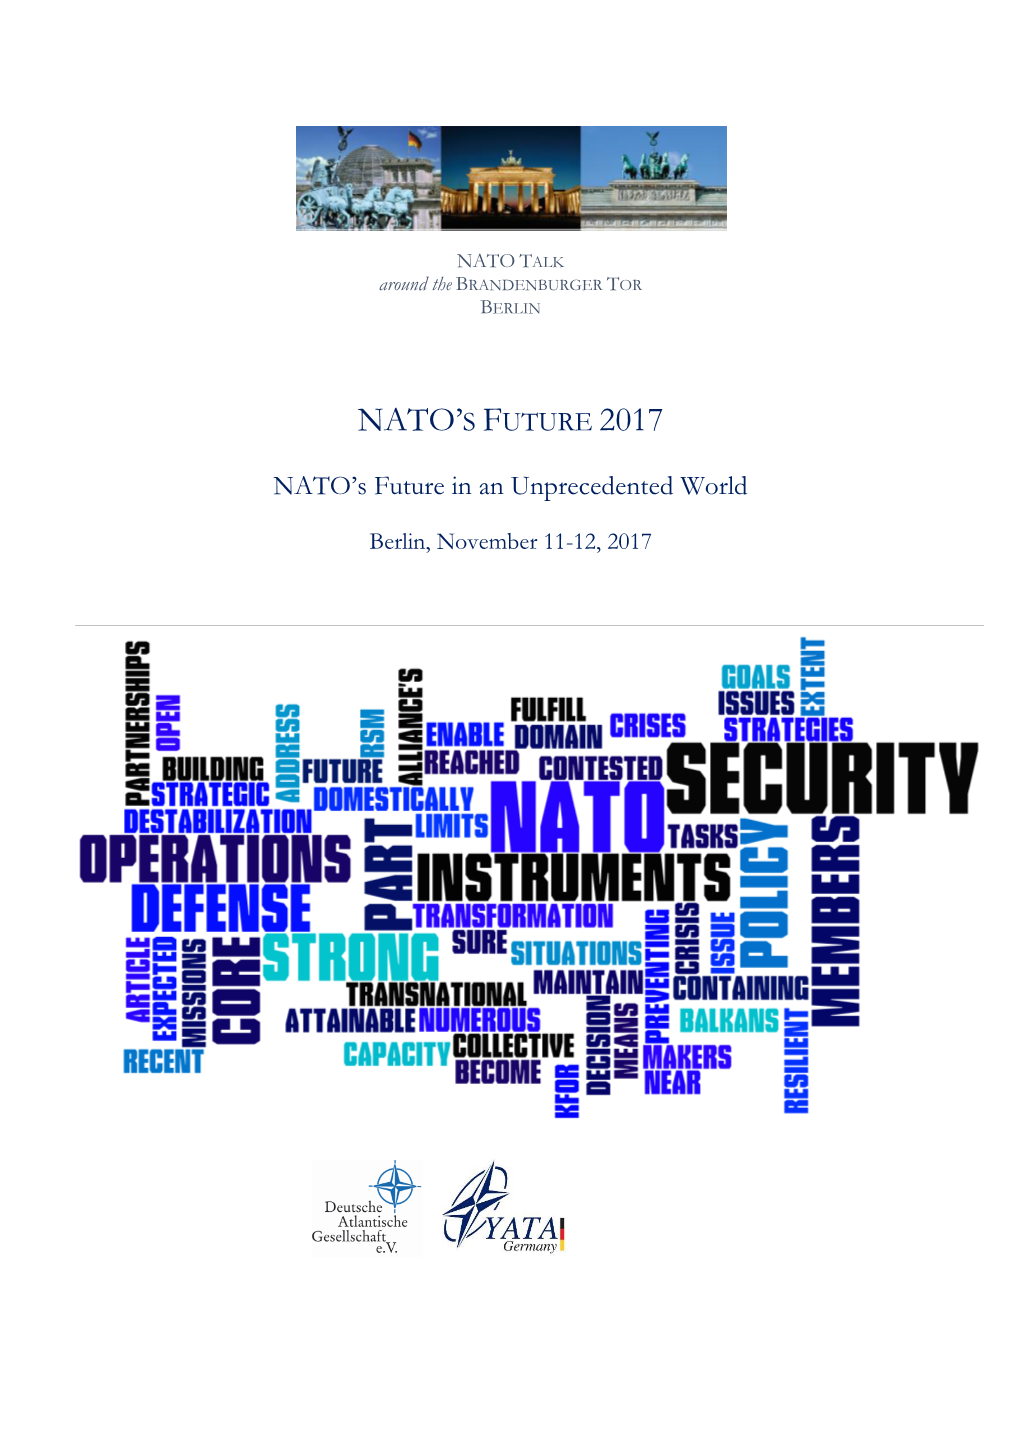 NATO's Future in an Unprecedented World